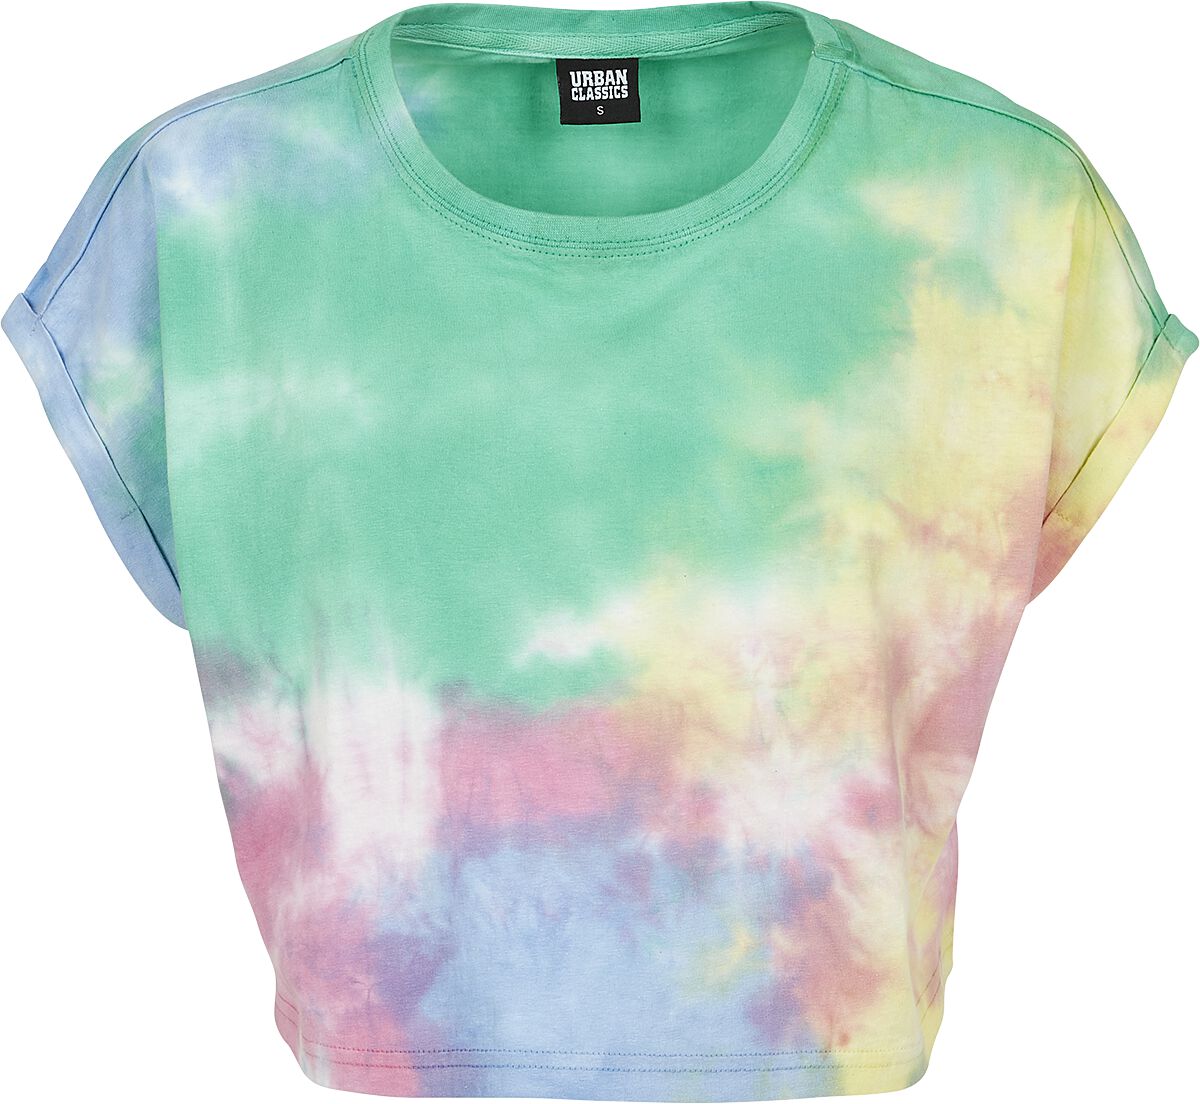 T-Shirt Manches courtes de Urban Classics - Crop Top Tye Dye Femme - XS à XL - pour Femme - multicol